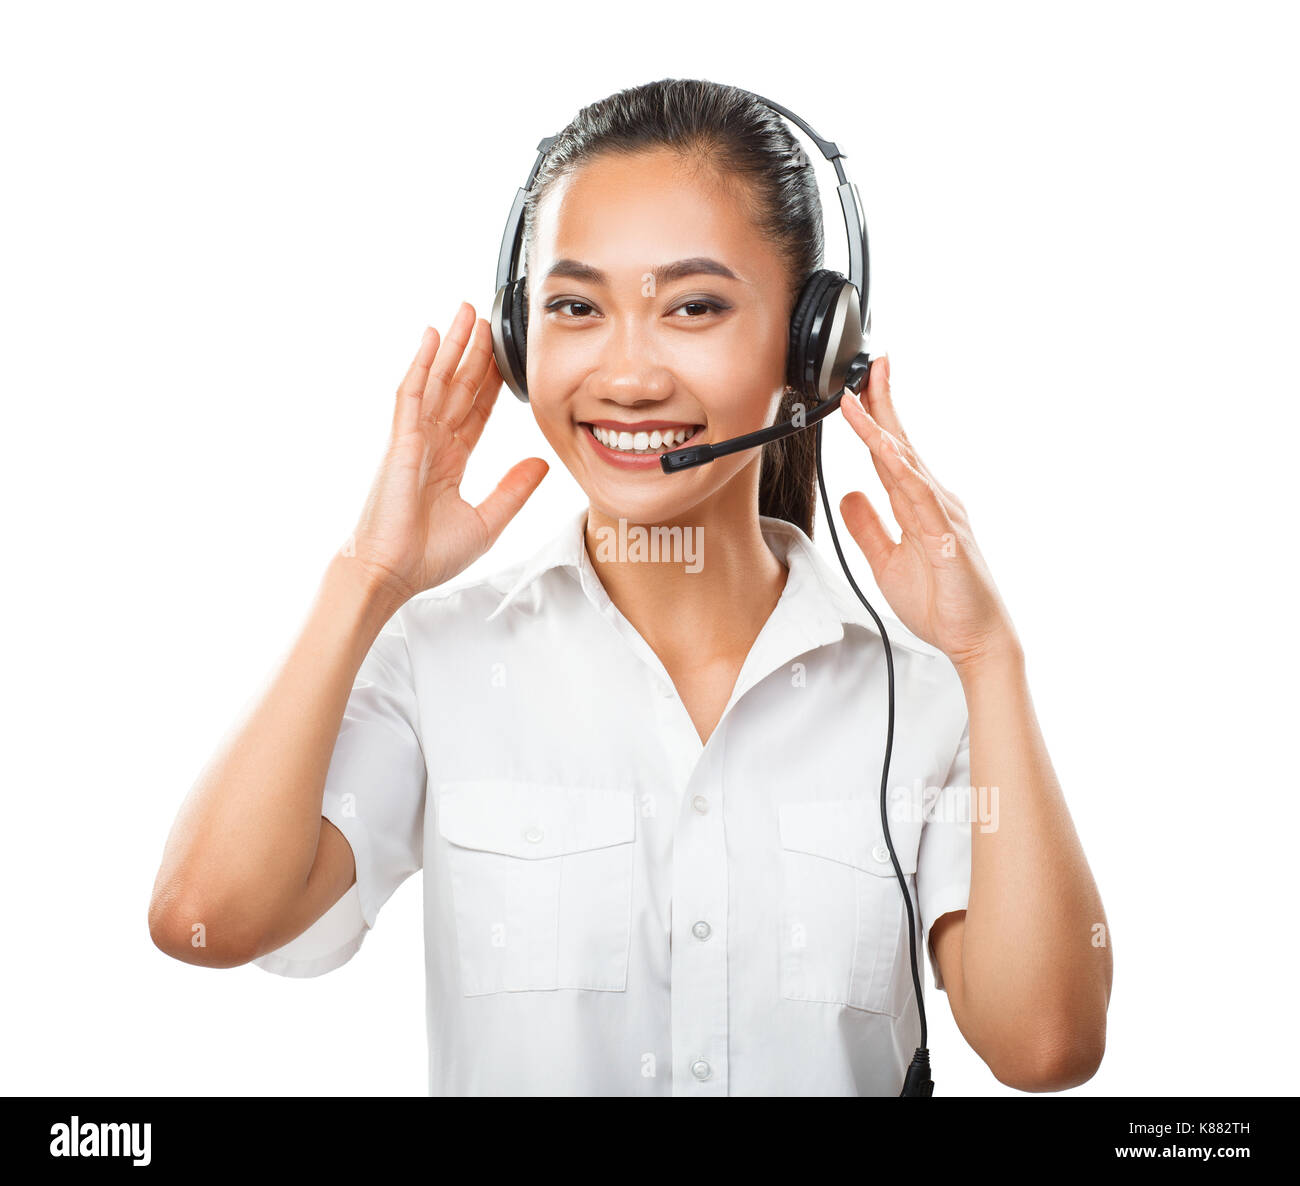 Kunden Service Operator junge asiatische Frau mit Headset. Schöne weibliche Operator Call Center lächelnd und mit Blick auf die Kamera. Modell isoliert auf weiss Stockfoto